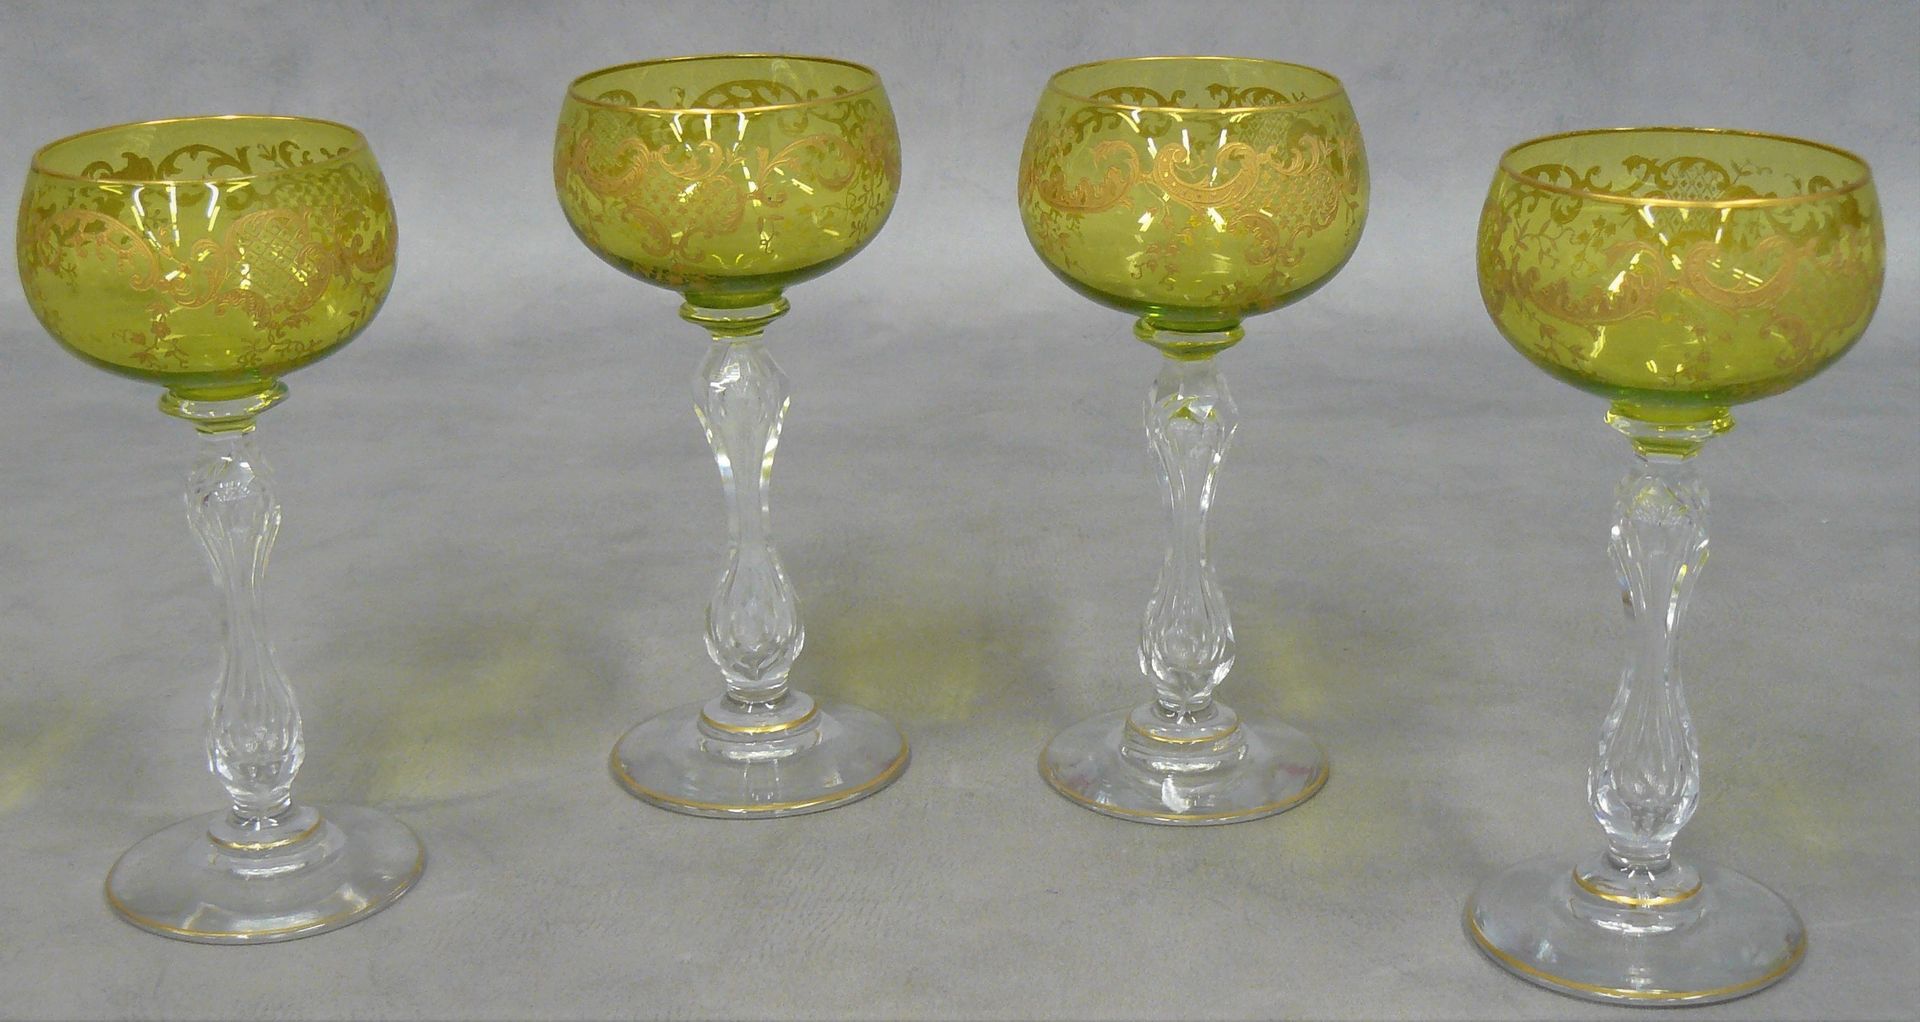 Null suite de quatre verres à vin blanc en cristal teinté vert et rehaussé or